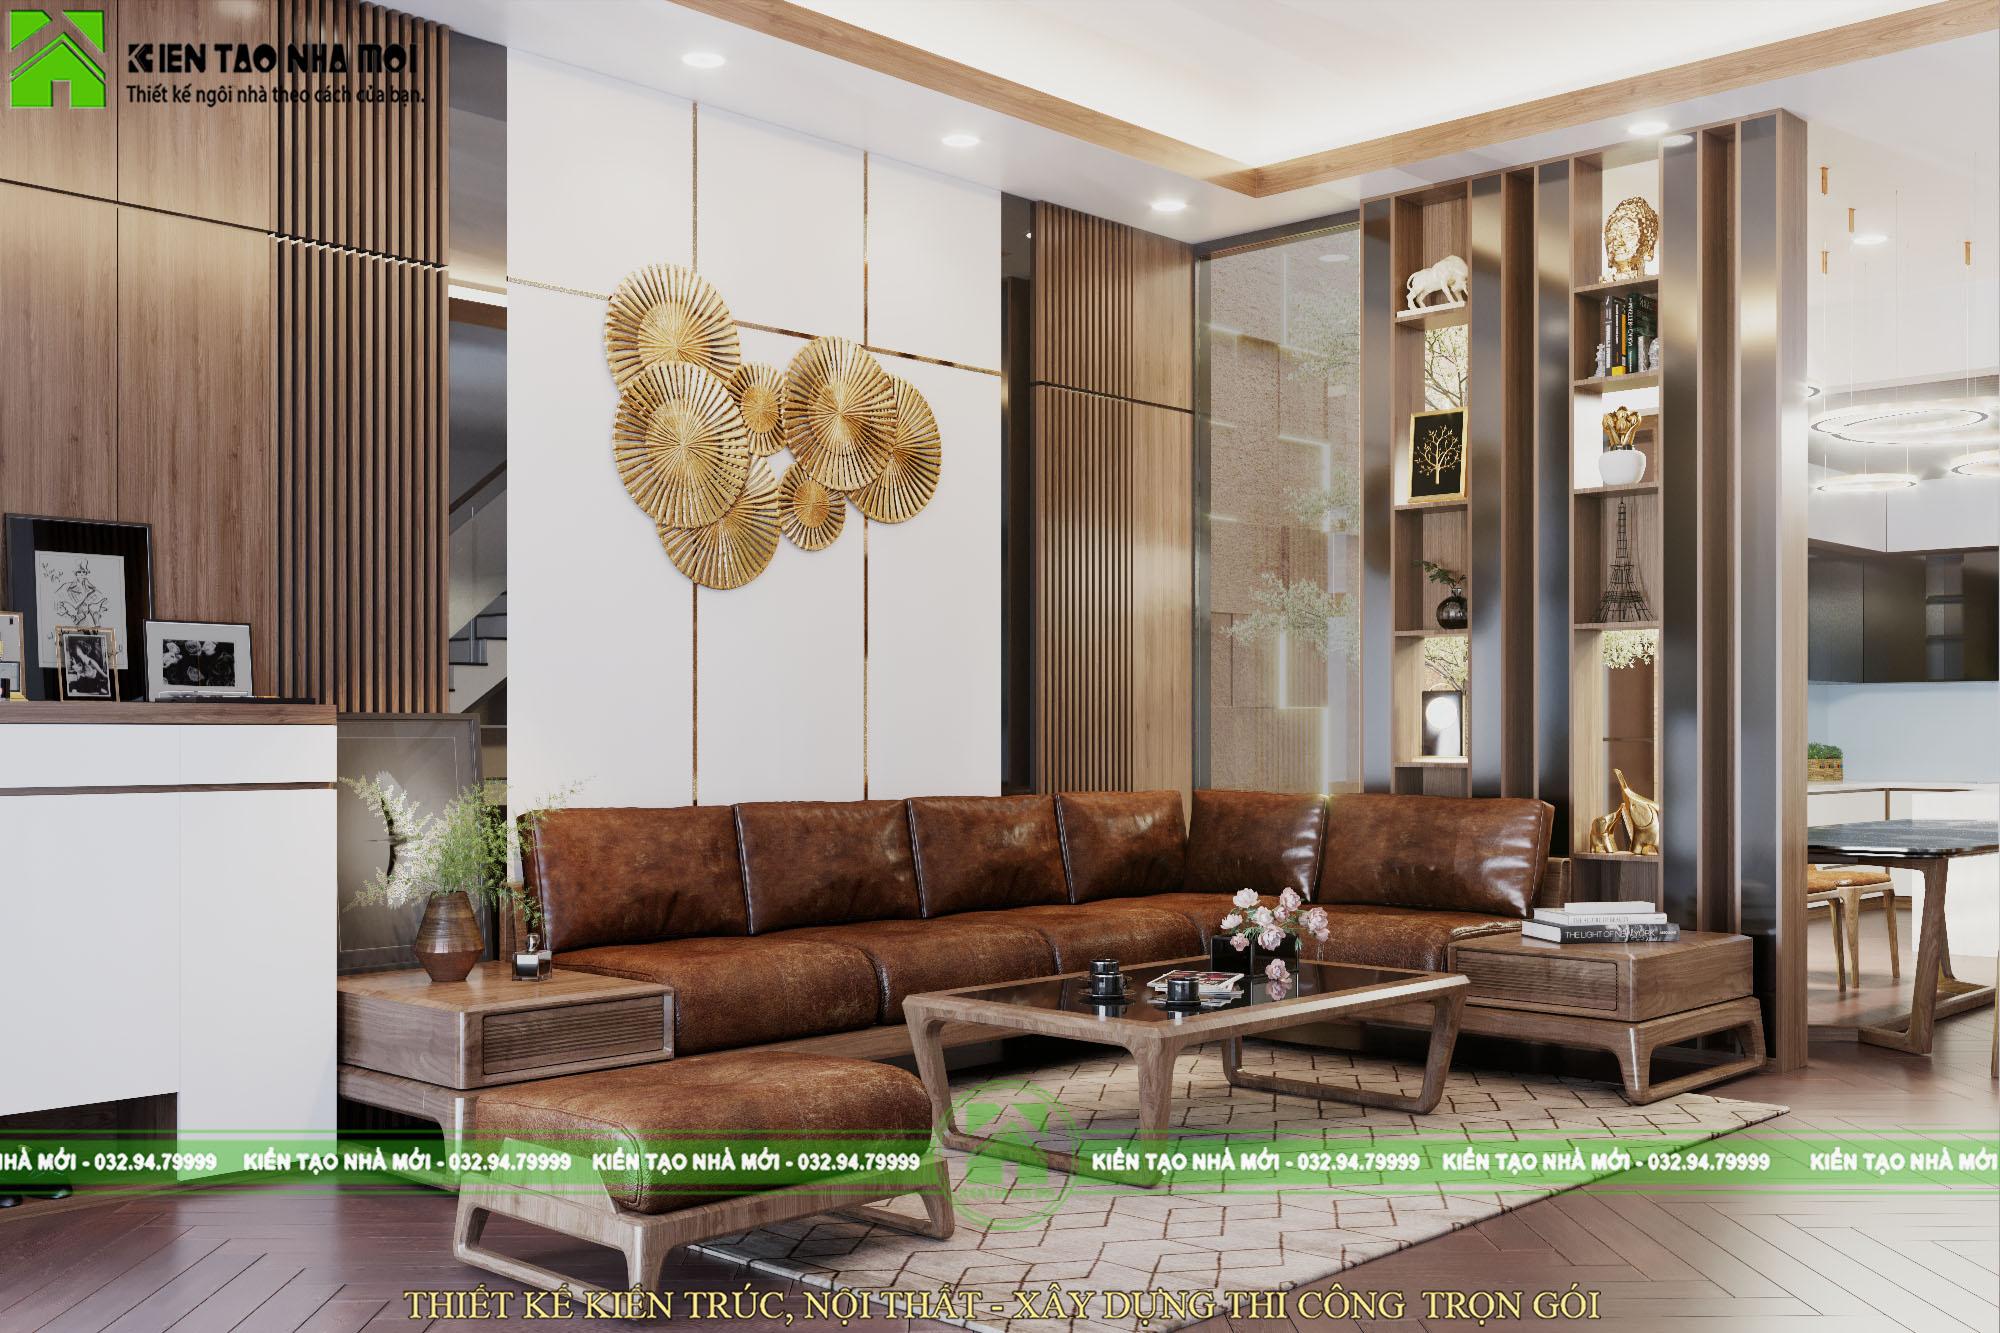 Thiết kế nội thất Biệt Thự tại Phú Thọ Thiết kế nội thất nhà ở đẹp, hiện đại tại Phú Thọ 1588576336 1